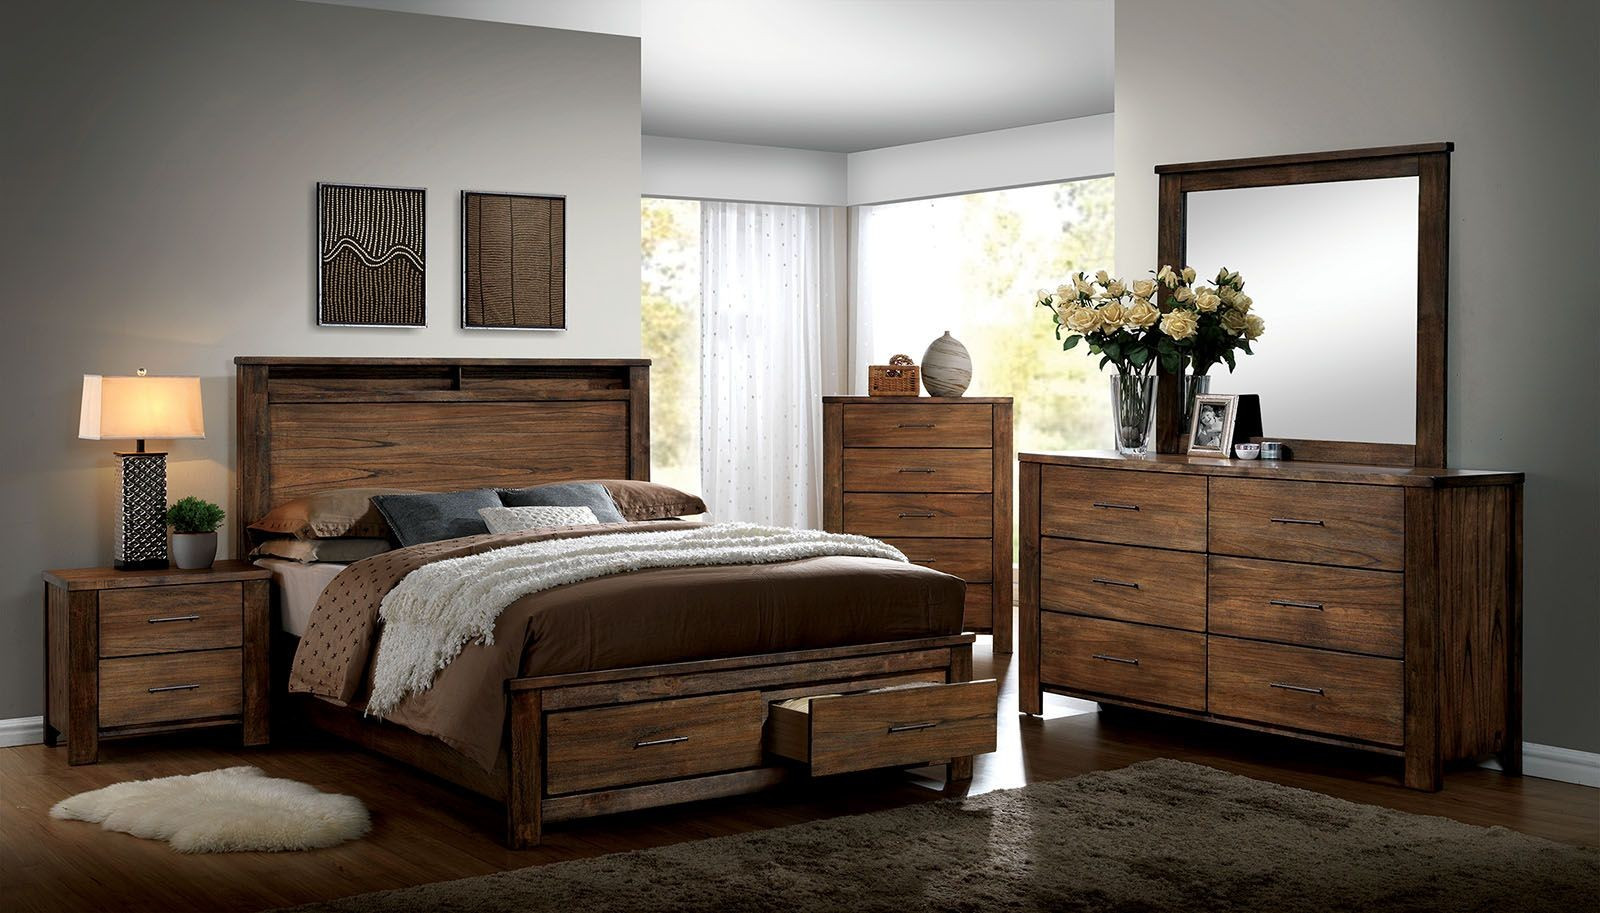 Best ideas about Storage Bedroom Sets
. Save or Pin Elkton Oak Platform Storage Bedroom Set CM7072Q Now.